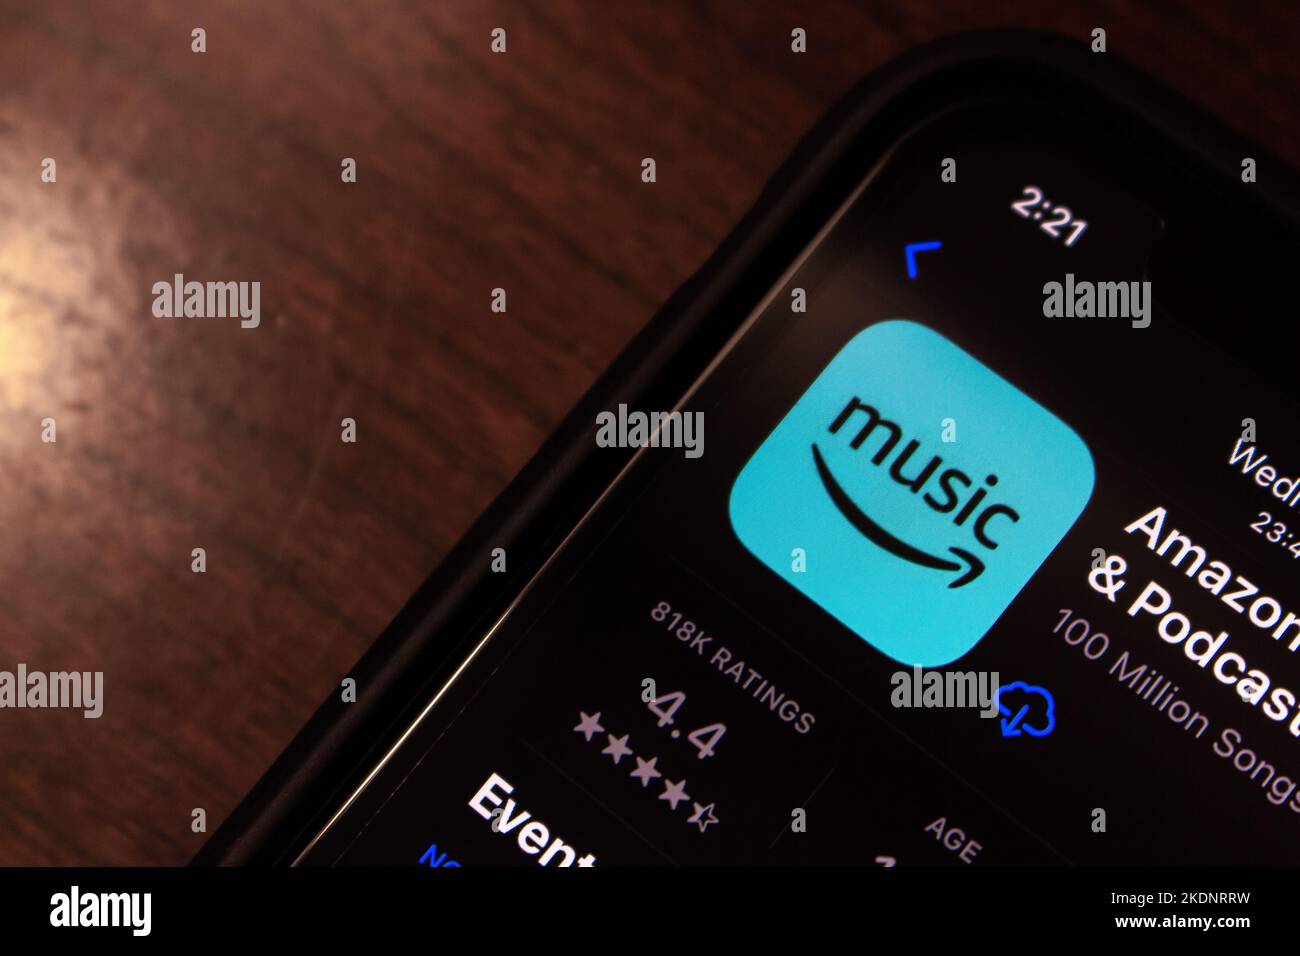 Vancouver, KANADA - Nov 4 2022 : Amazon Music, eine Online-Musik-Streaming-Plattform und Store von Amazon inc., im App Store auf einem iPhone-Bildschirm. Stockfoto